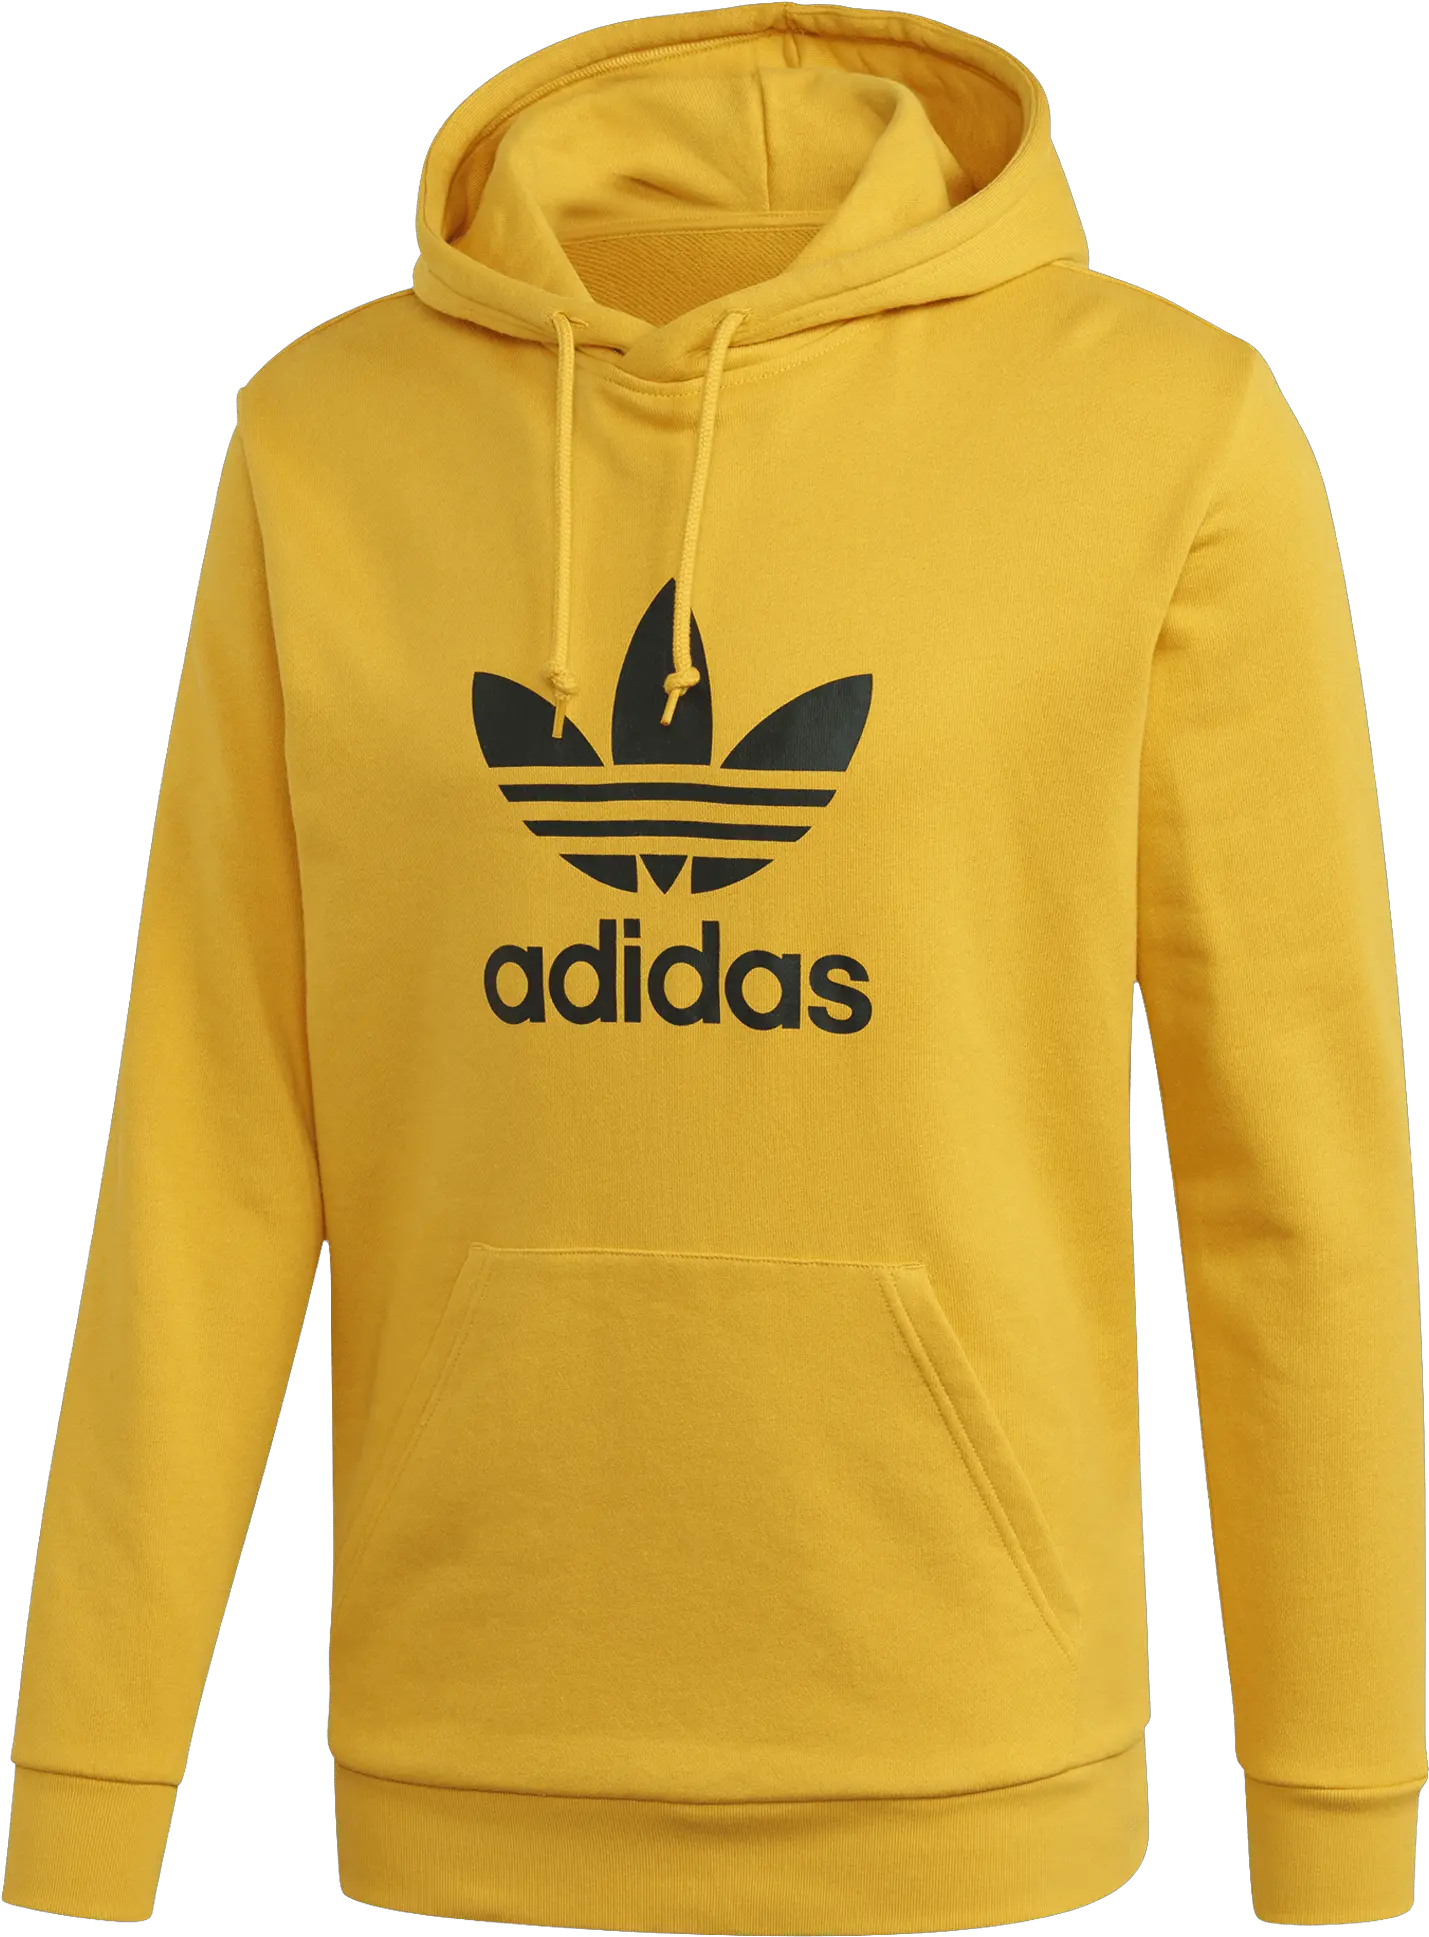 New Arrivals Sudaderas Adidas Color Amarillo Png Cav Empt Icon Pullover